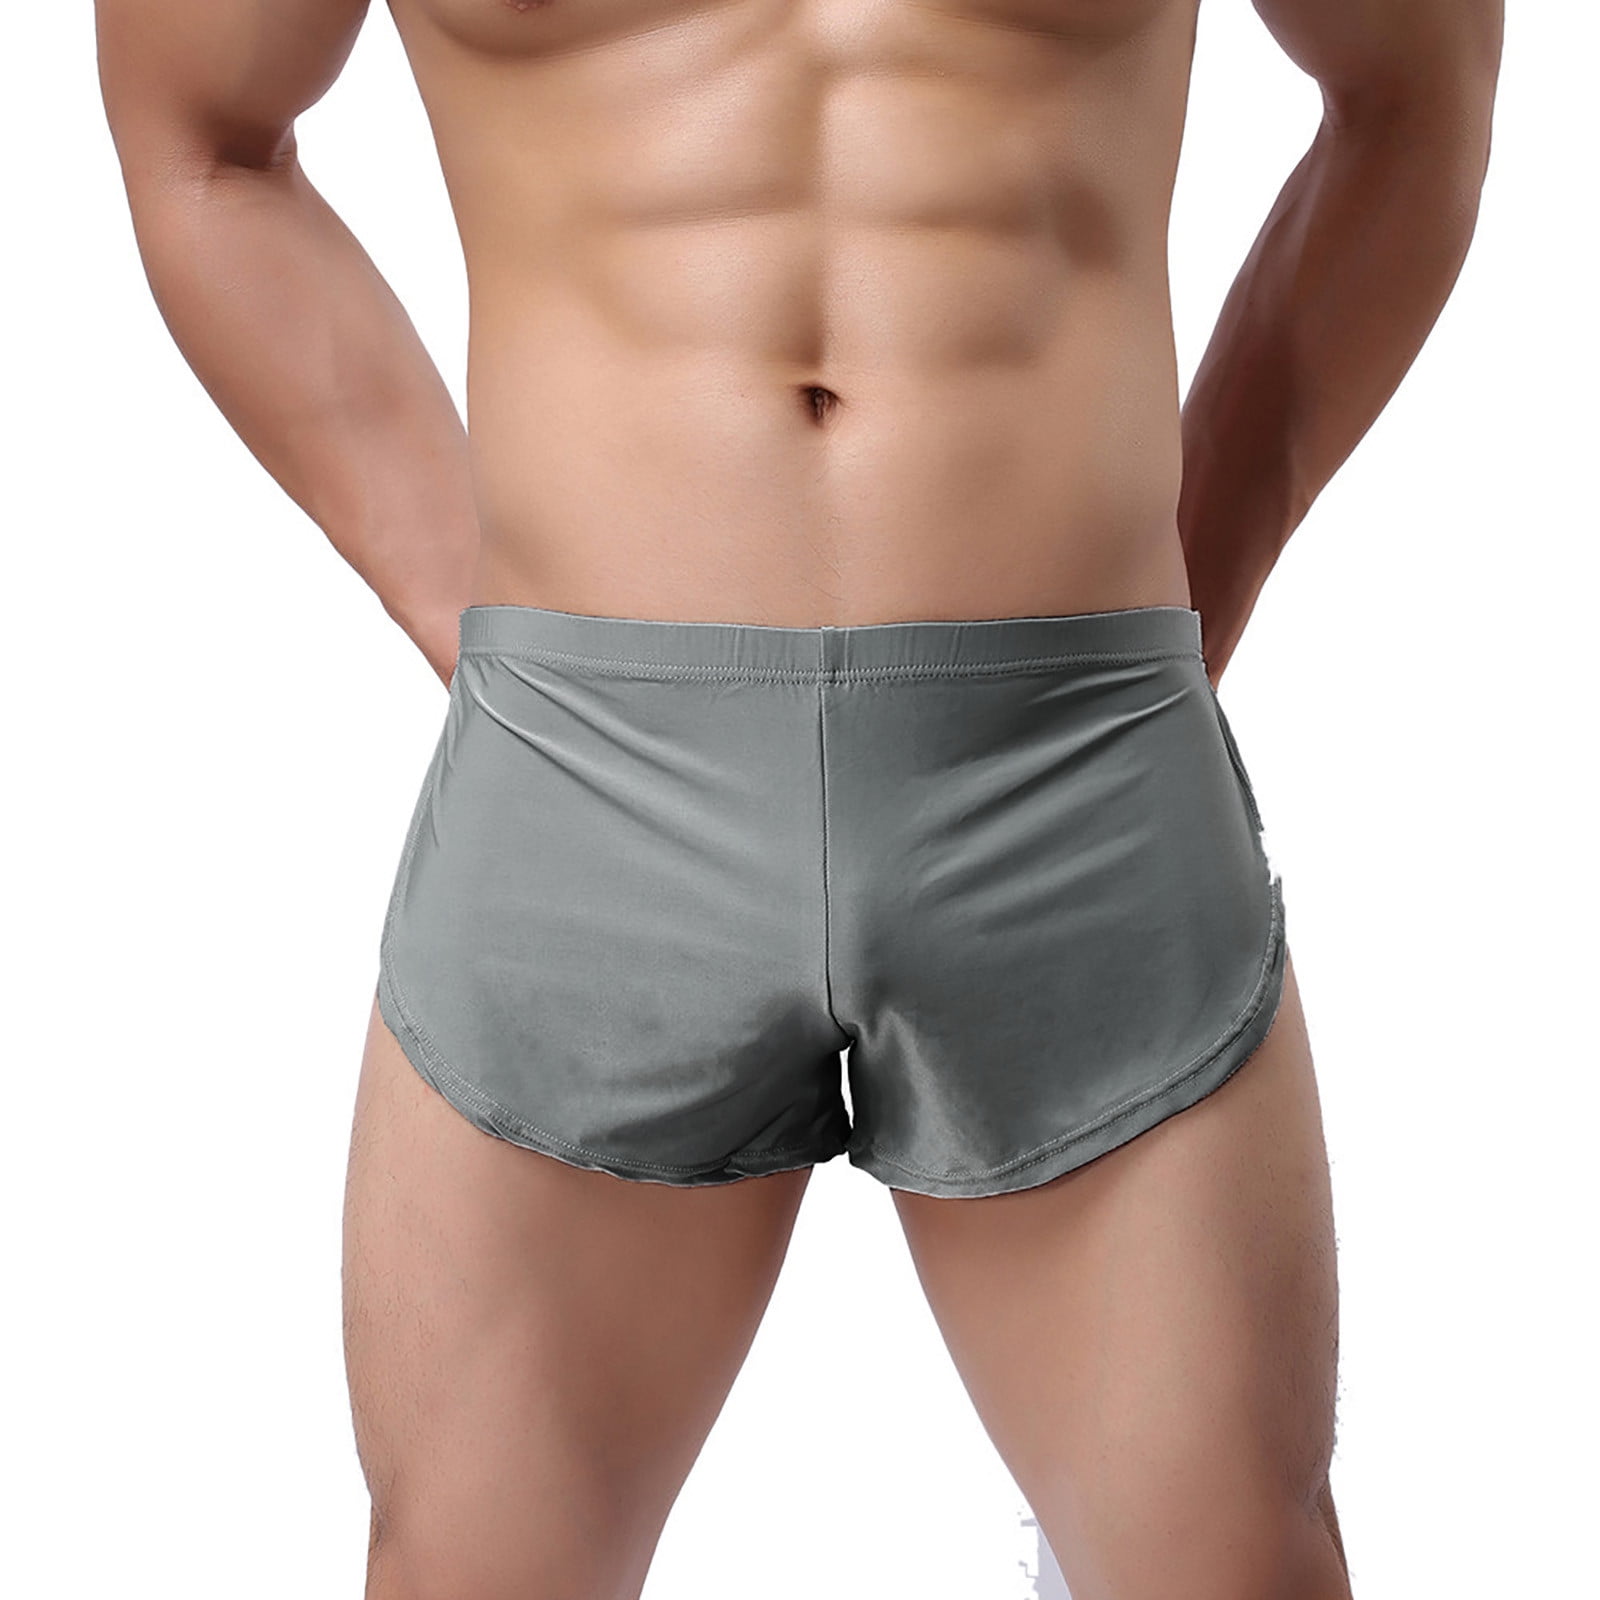 Men's Sexy Underwear Bulge Pouch Underpants Low Rise Trunks Short Leg Boxer  Briefs